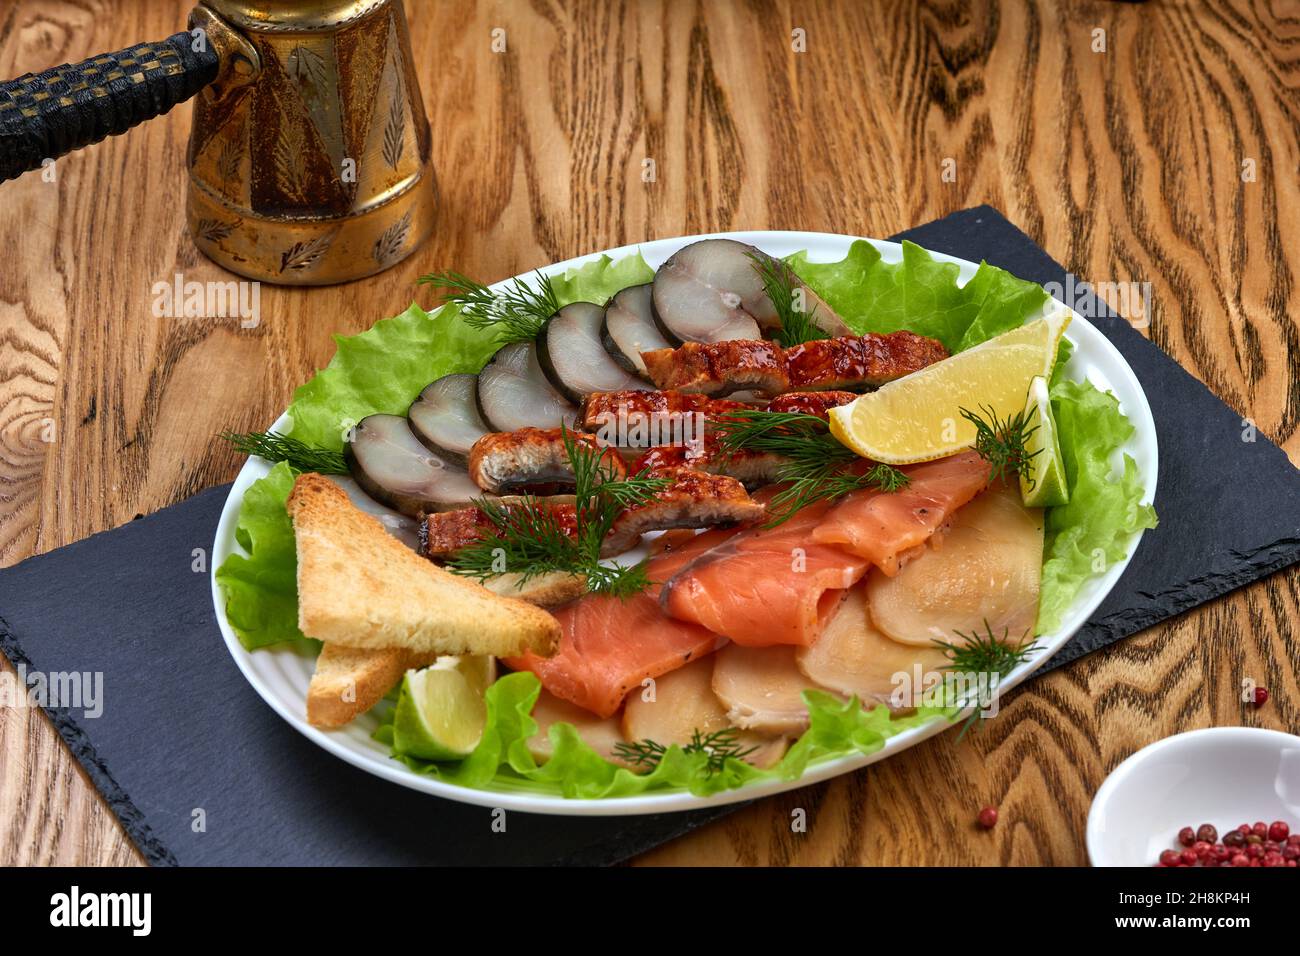 Piatto di pesce con diversi tipi di pesce affumicato e salato, con limone, insalata e crostini Foto Stock